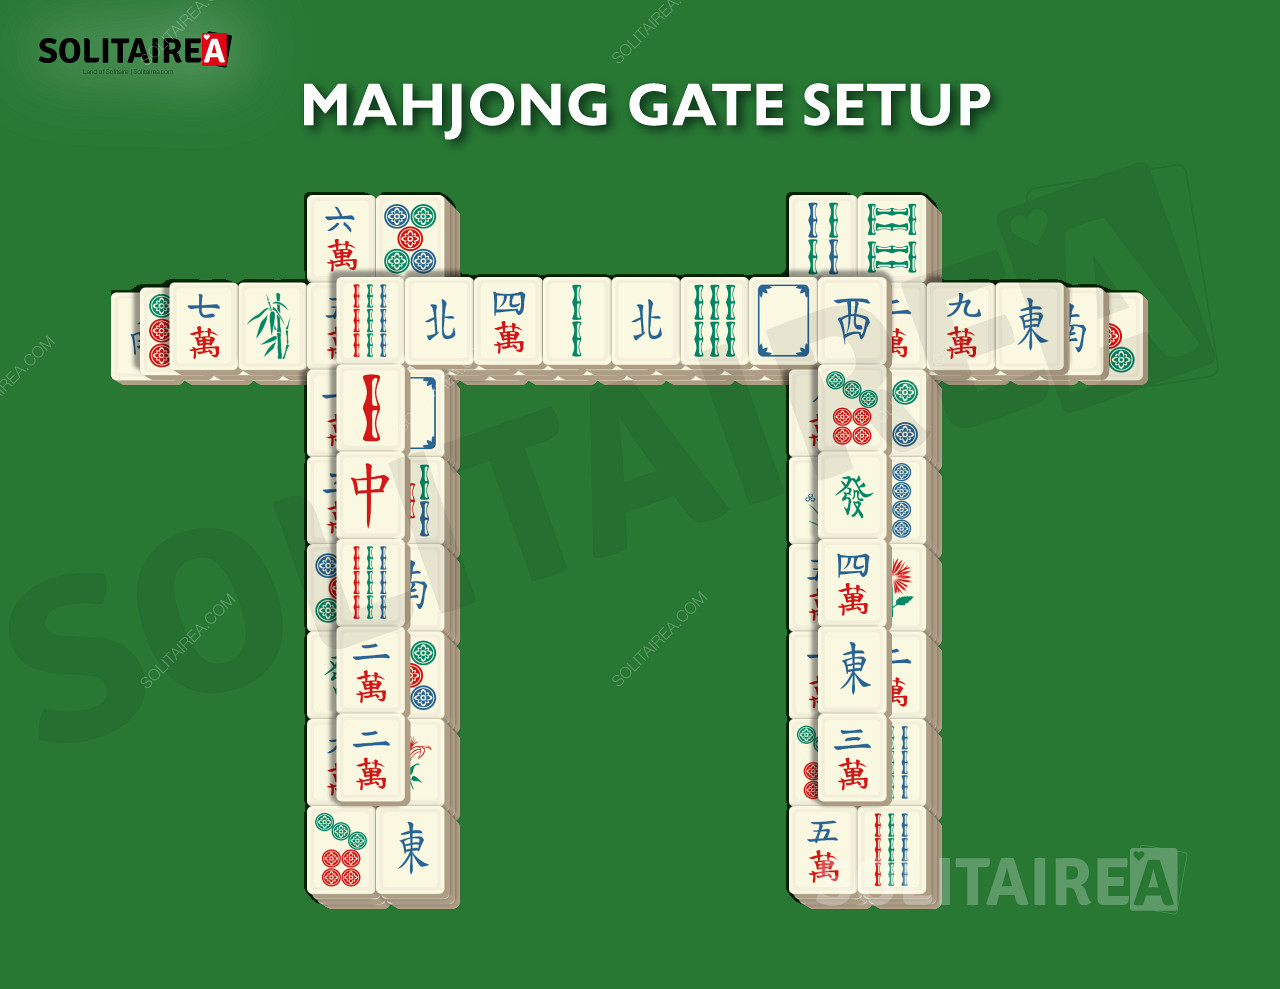 Oppsett og strategi for Mahjong Gate